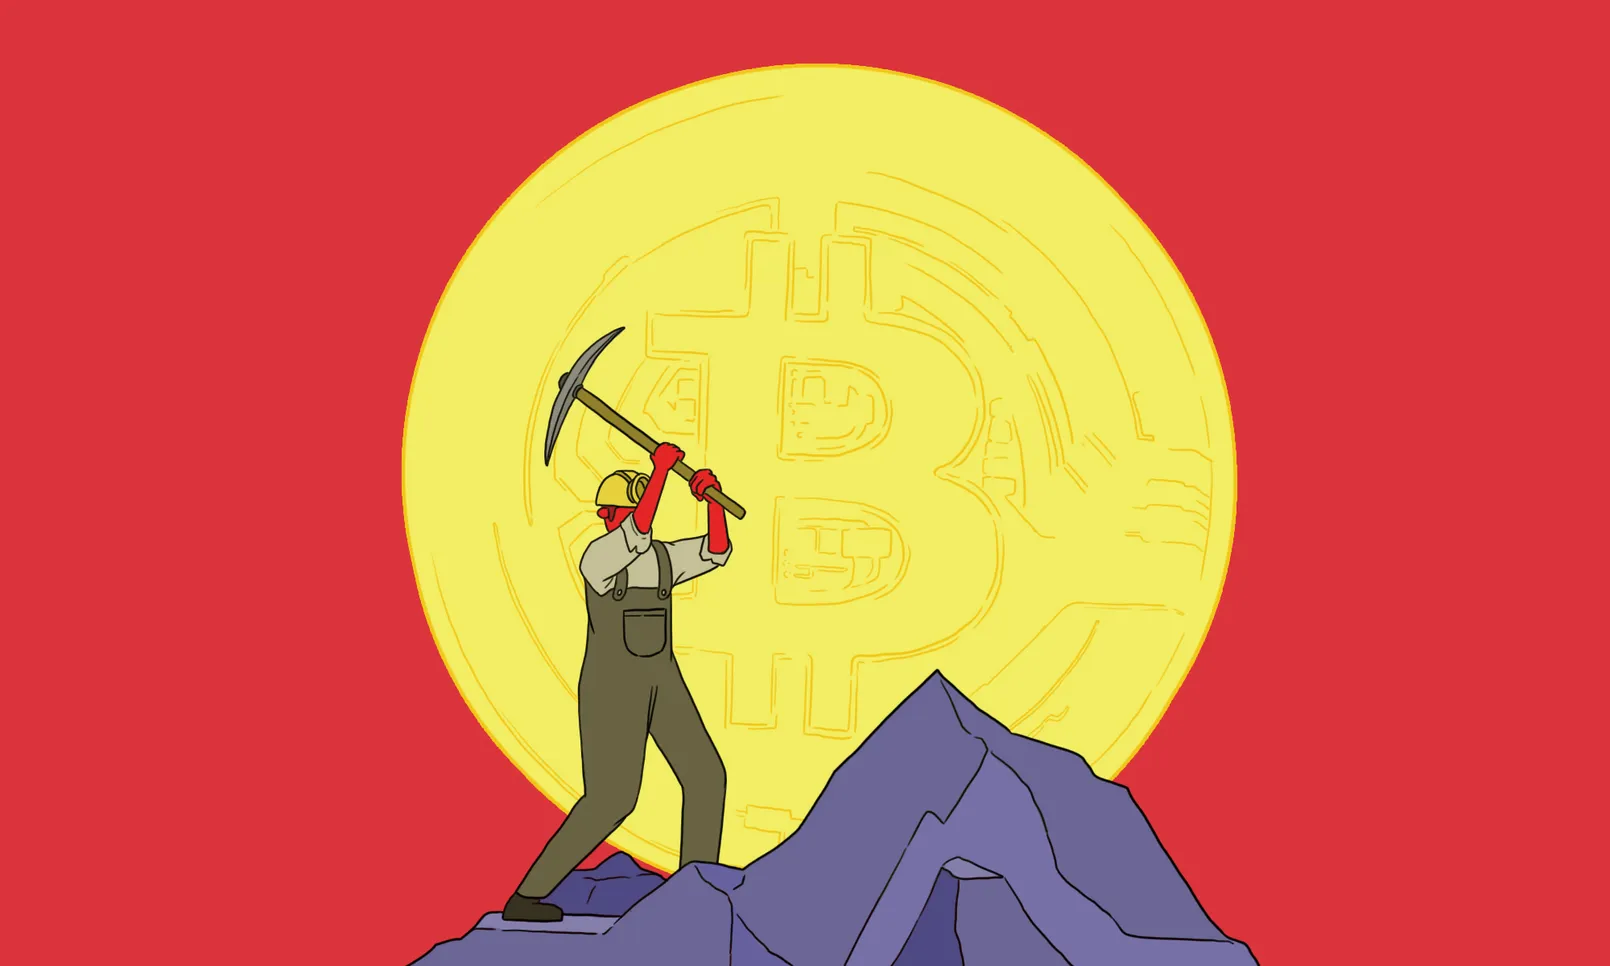 Bitcoin Mining Illustration Derek Zheng.jpeg